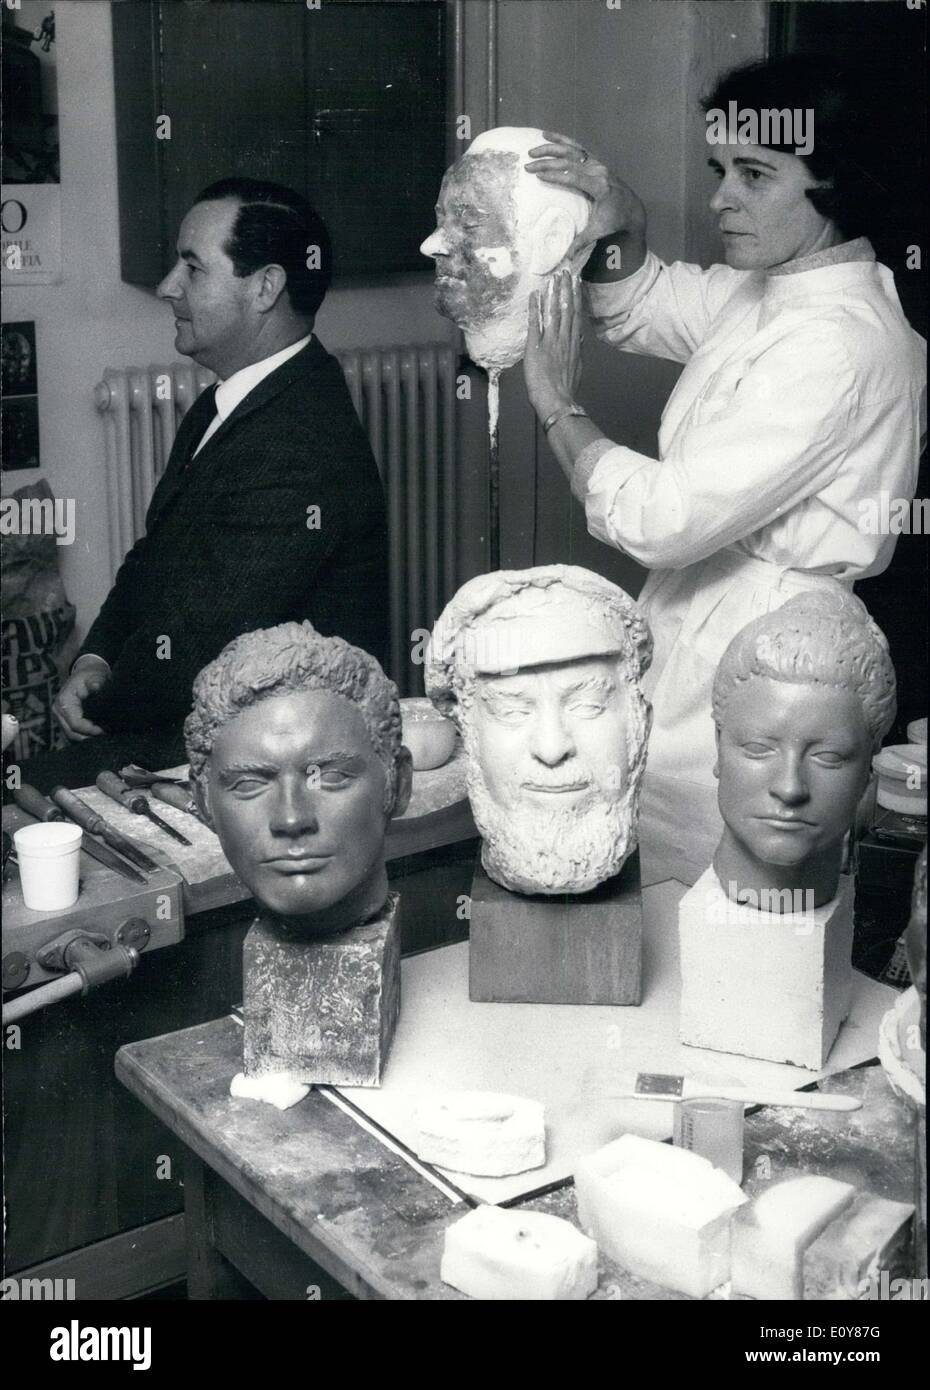 El 15 de enero, 1969 - Irmtraud brutas se muestra haciendo un busto de este hombre sentado a su izquierda. Foto de stock